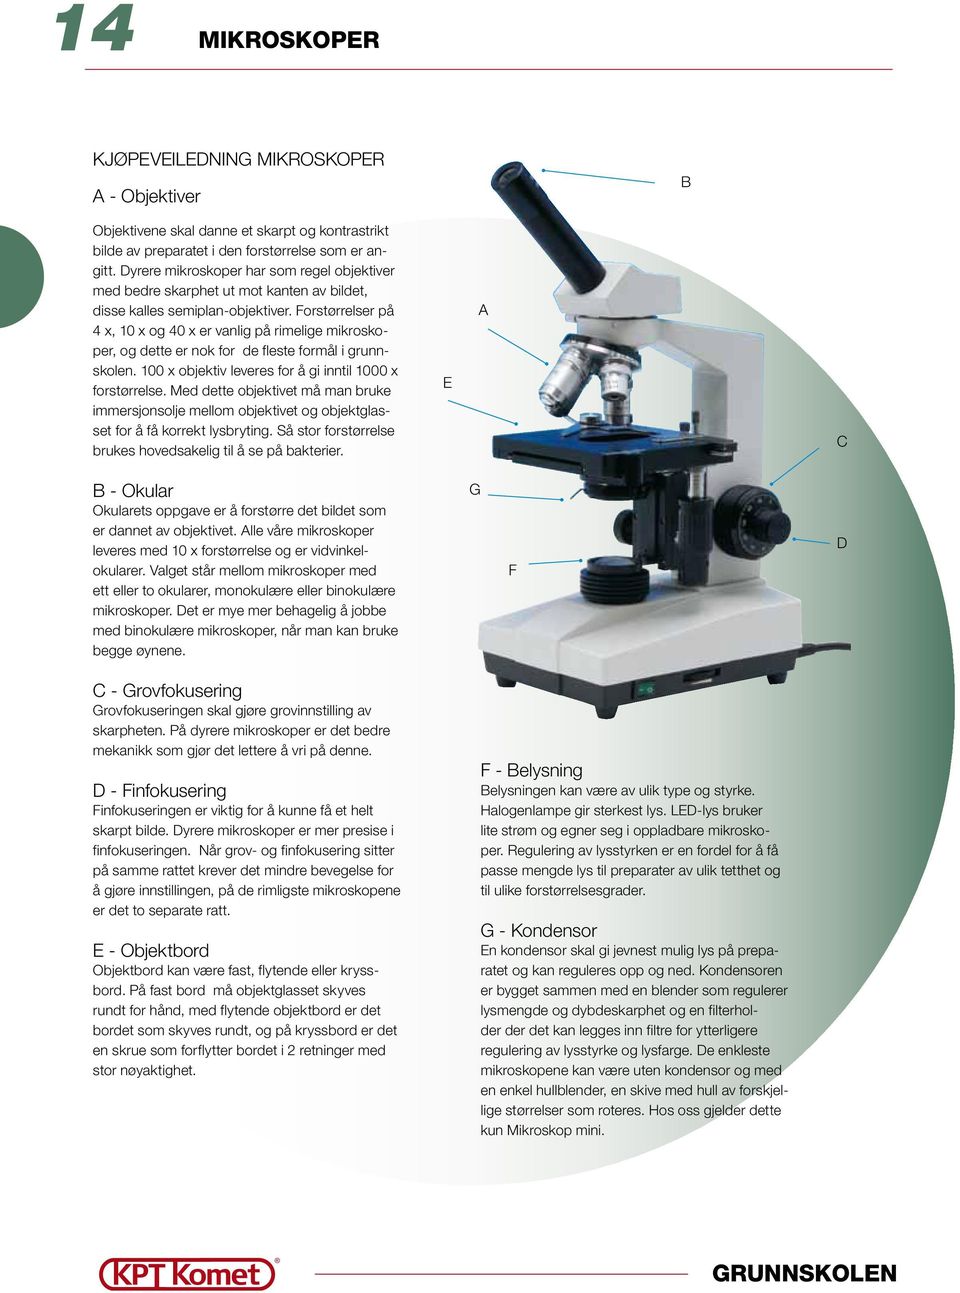 Forstørrelser på 4 x, 10 x og 40 x er vanlig på rimelige mikroskoper, og dette er nok for de fleste formål i grunnskolen. 100 x objektiv leveres for å gi inntil 1000 x forstørrelse.